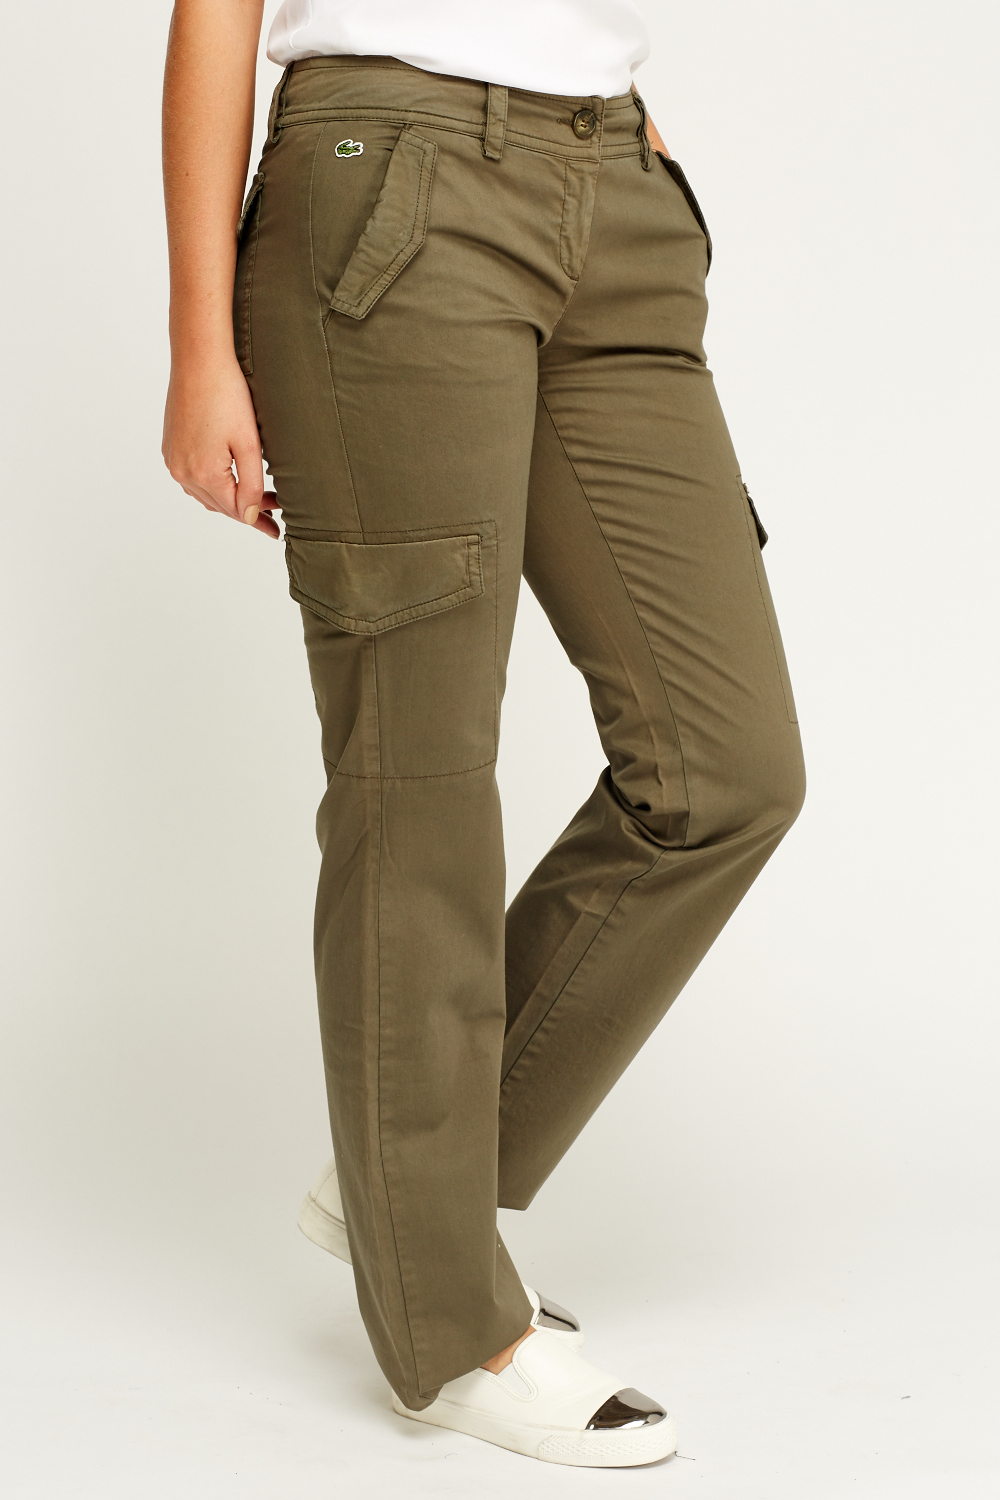 Lacoste Khaki Combat Trousers - Just $79